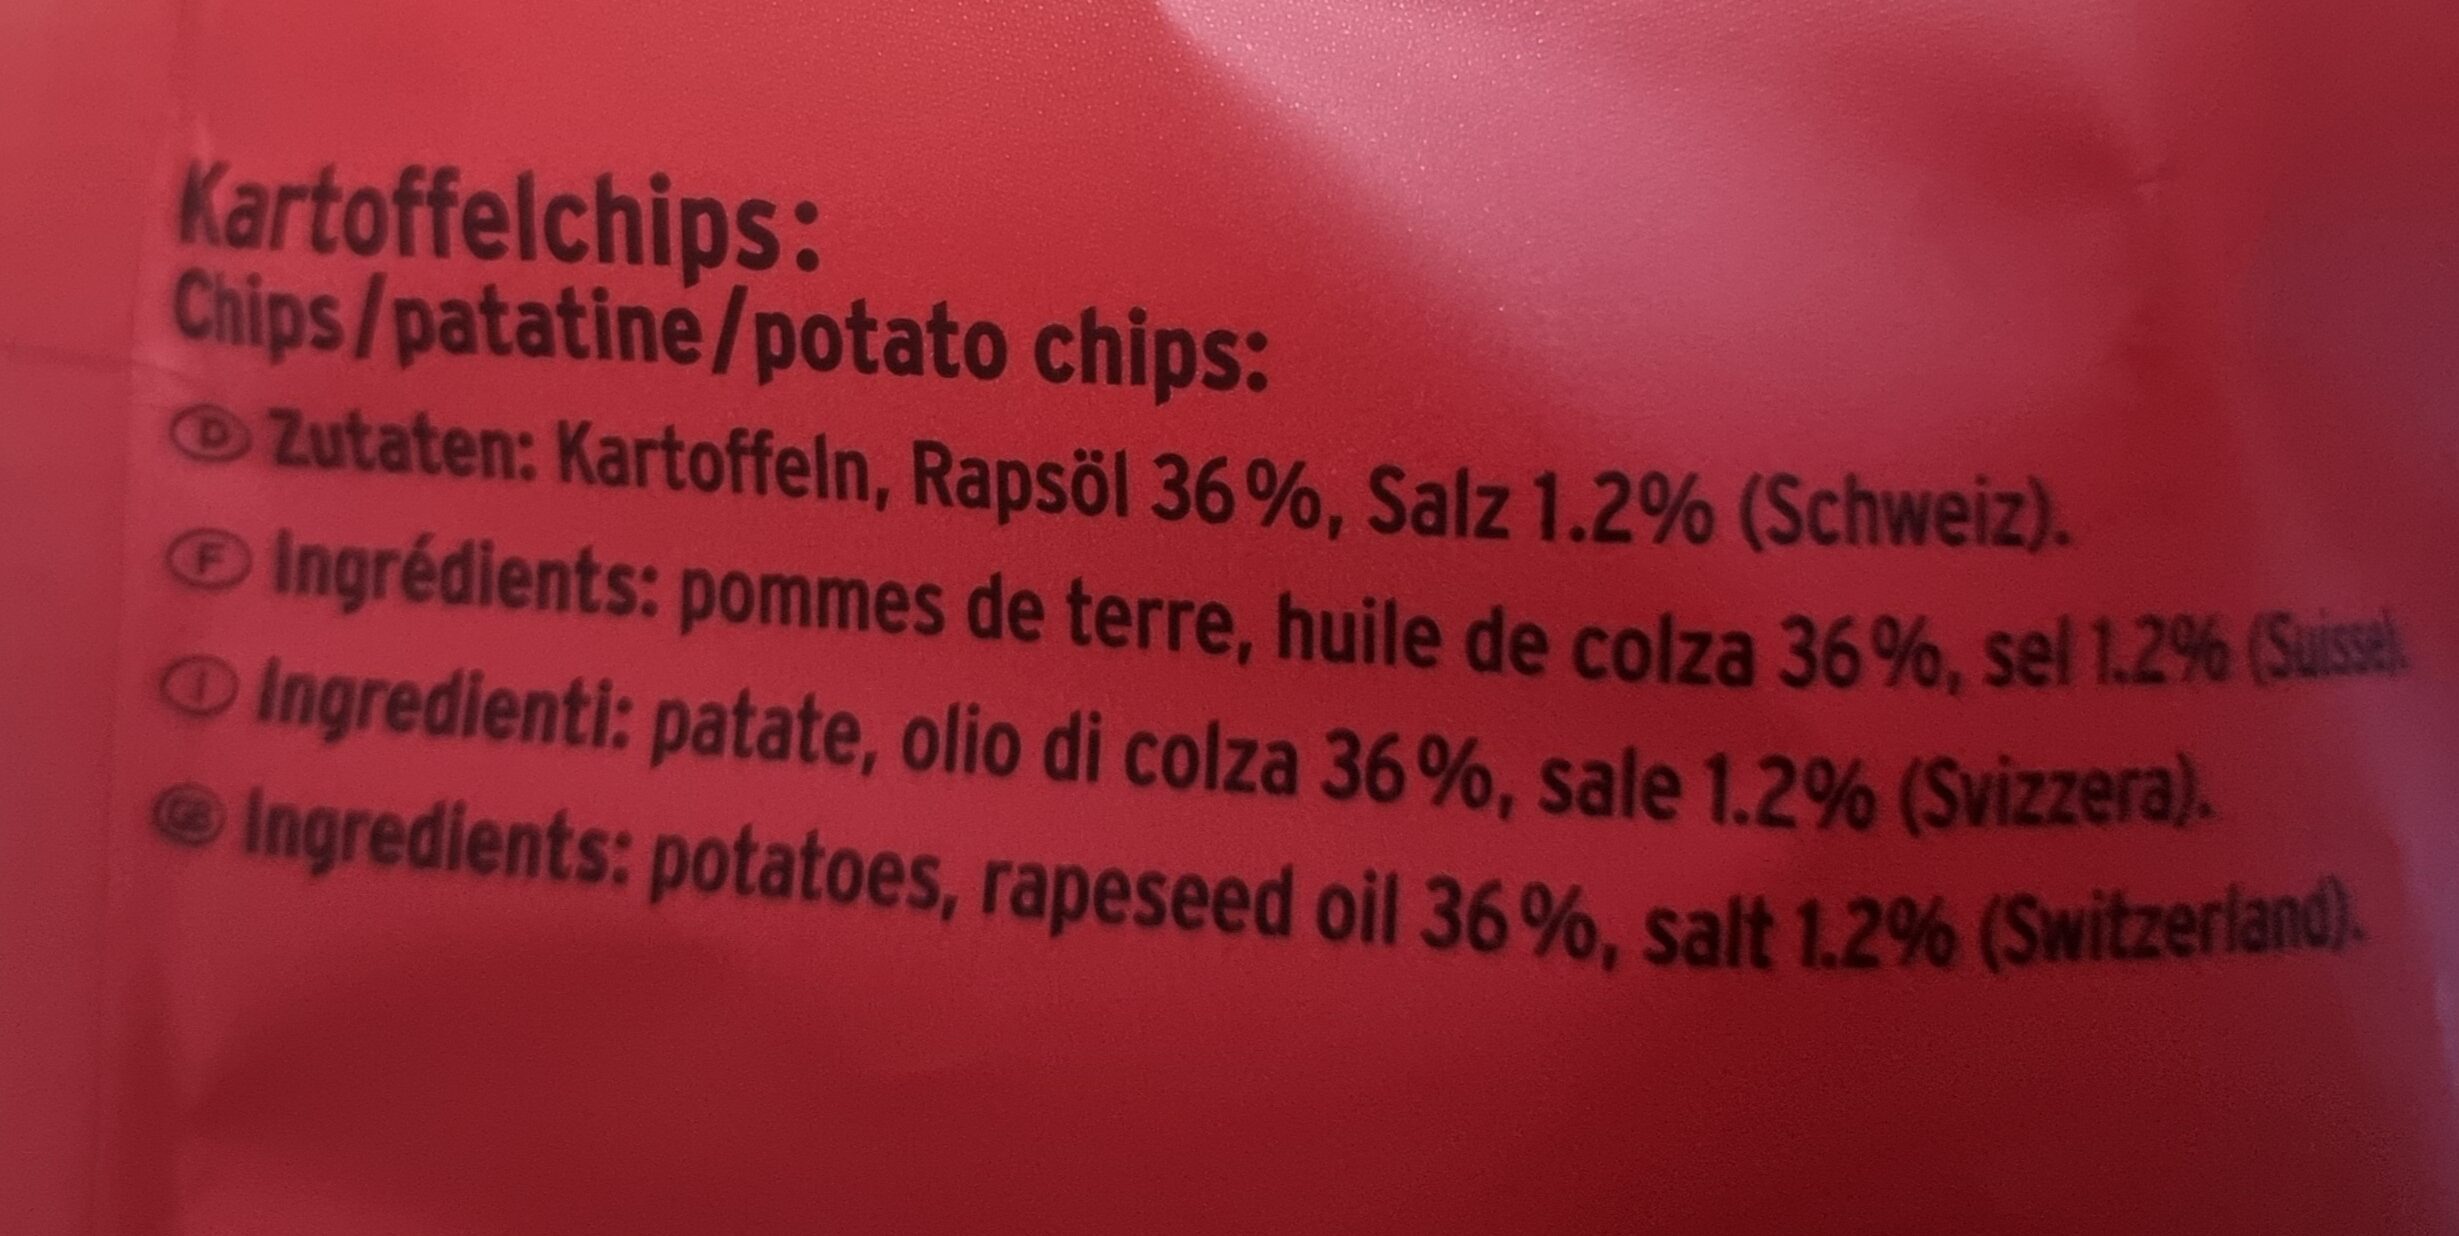 Zweifel chips nature original mit schweizer alpensalz und rapsöl – 280g